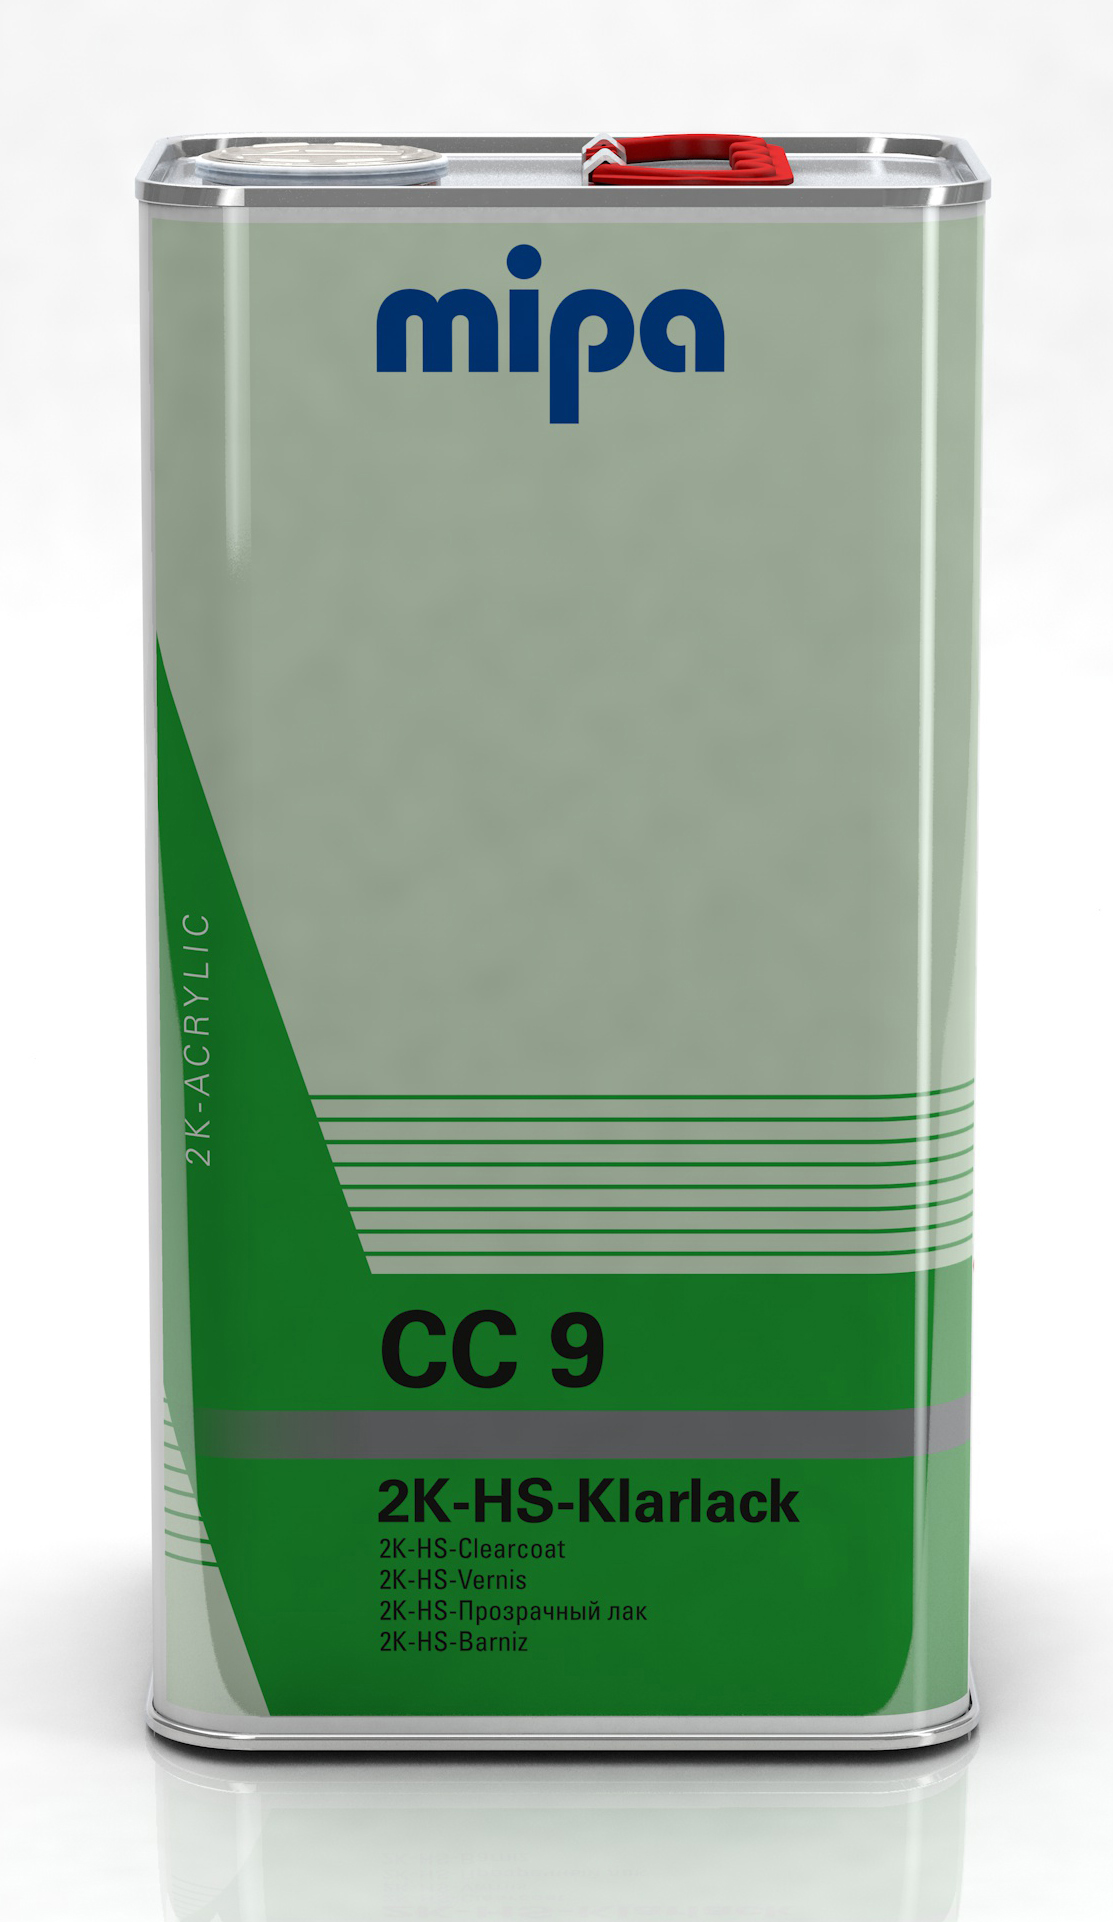 Mipa 2K-HS-Klarlack CC 9 5 l